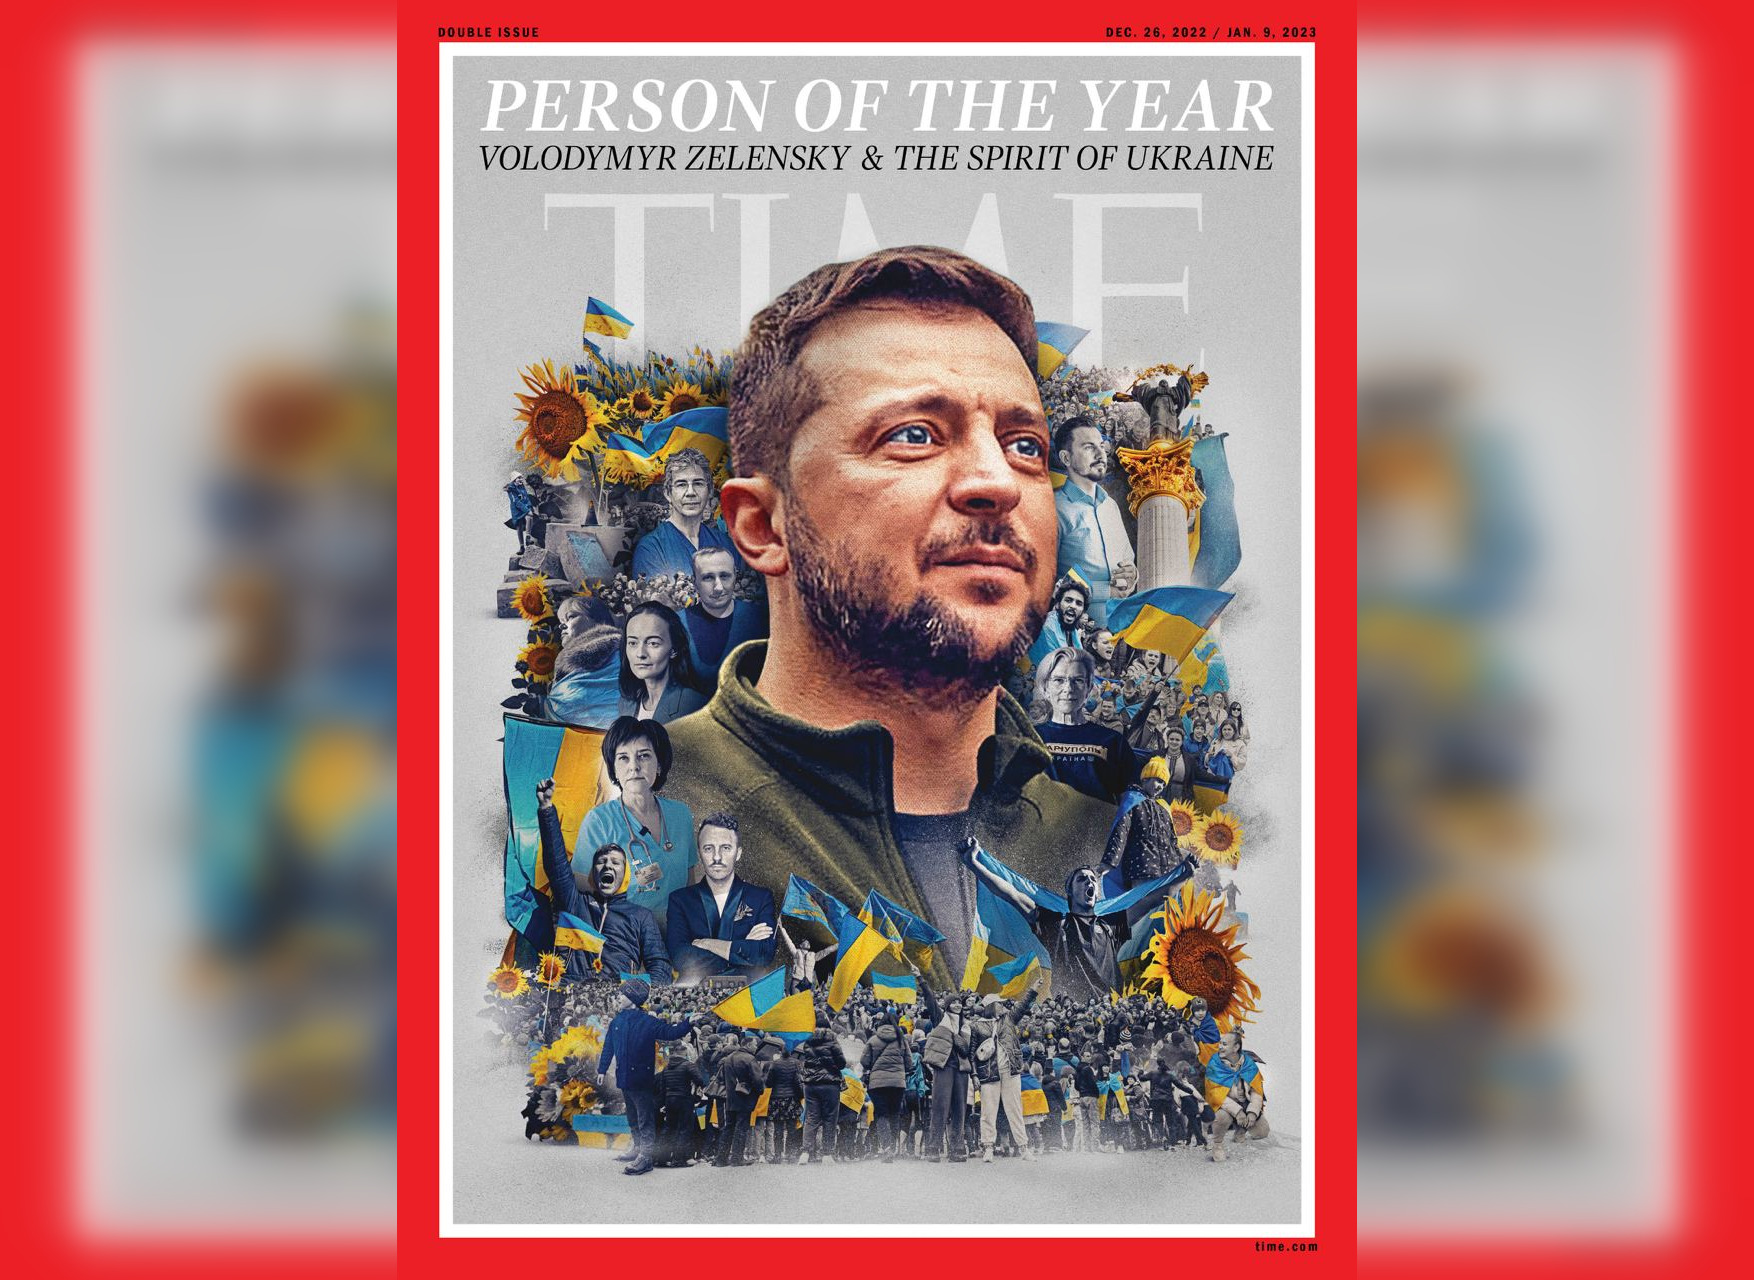 Журнал Time назвал человеком года Владимира Зеленского